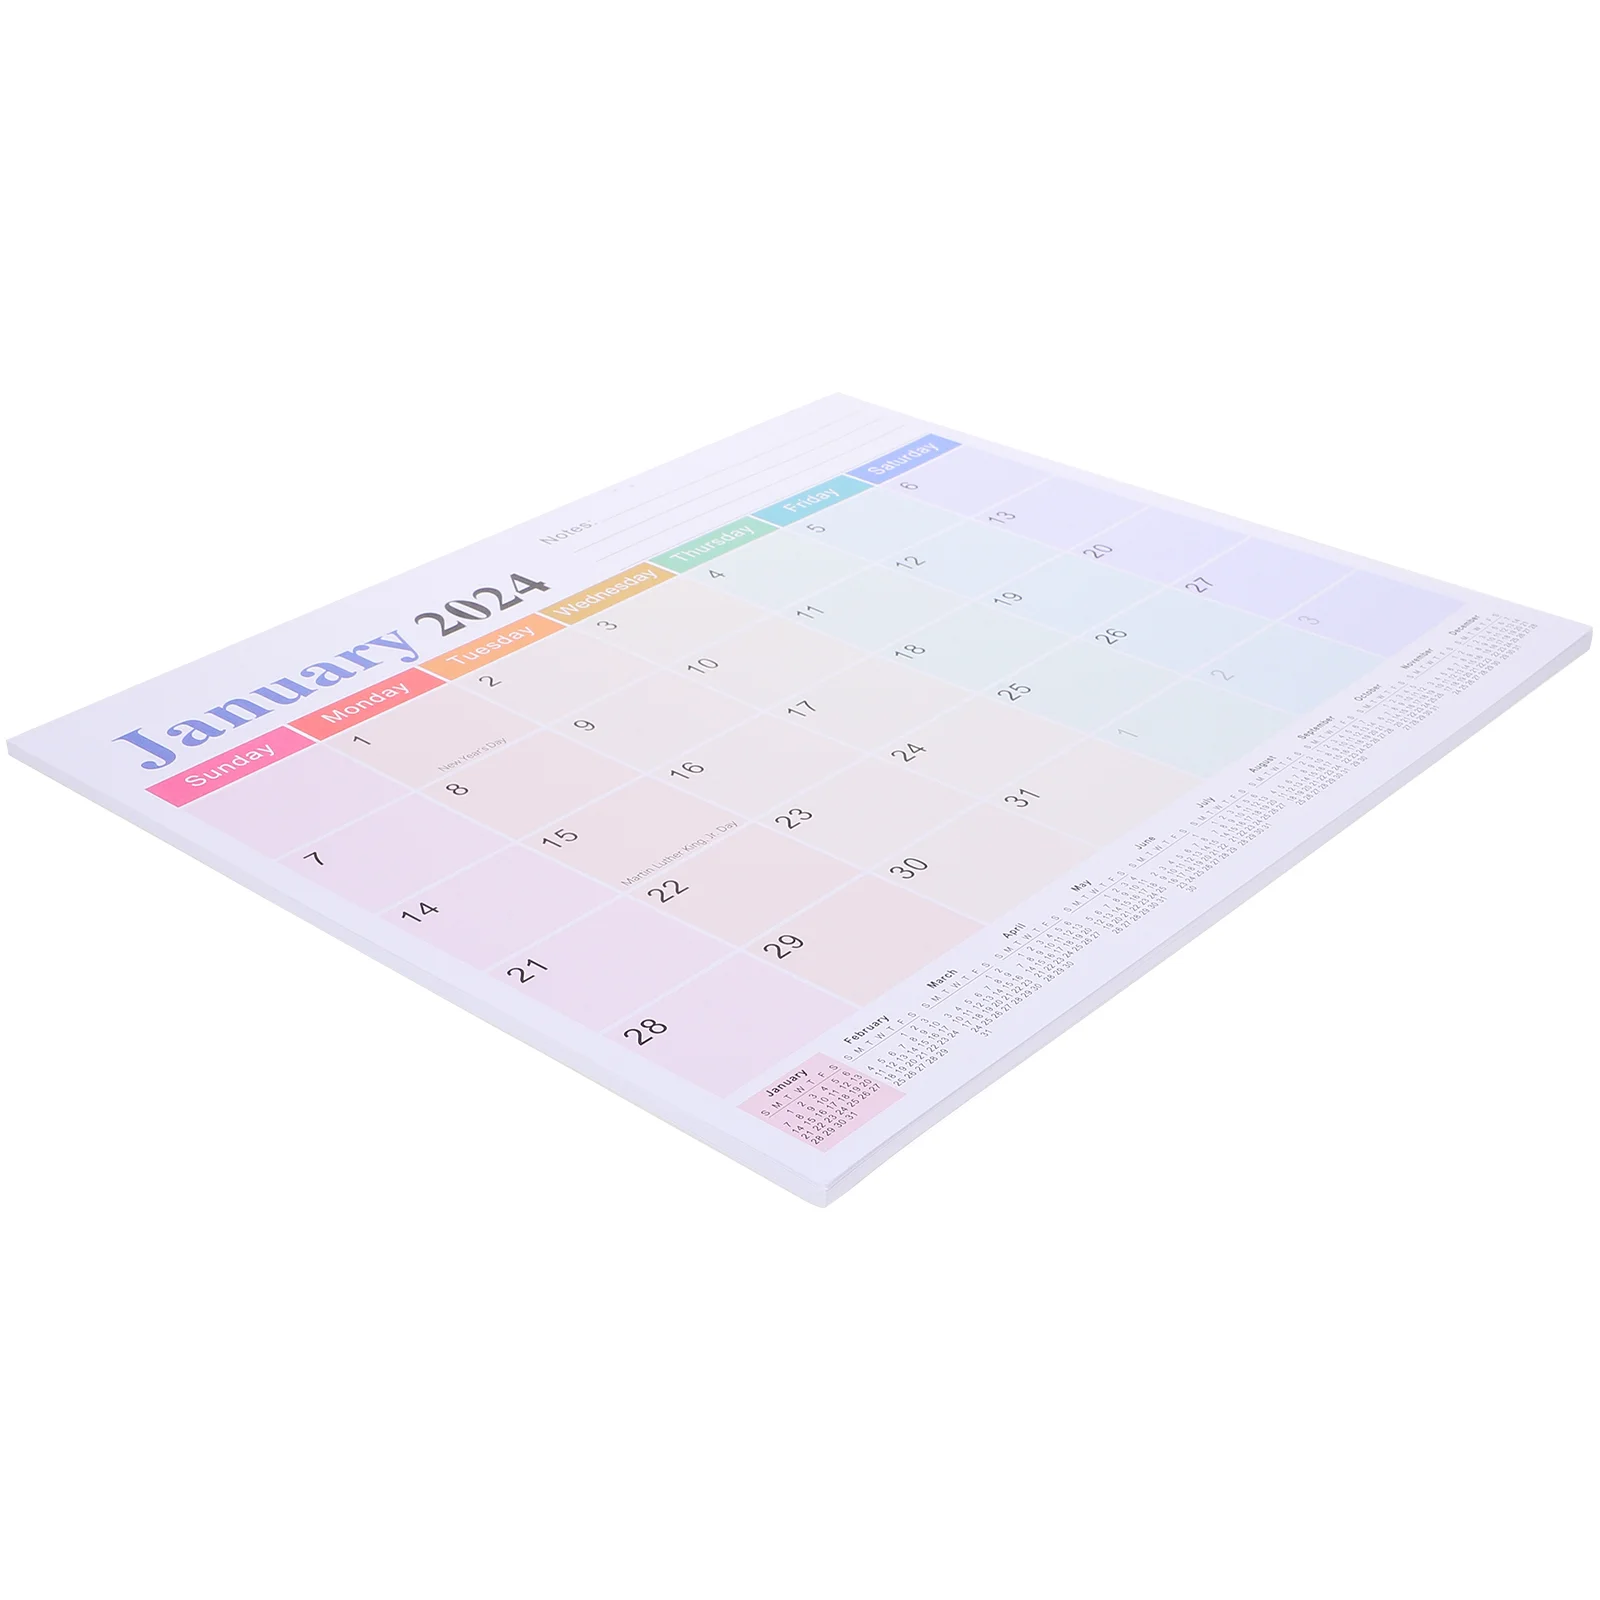 

Календарь на английском языке, бытовой календарь, заметка, магнитный ежемесячный календарь, домашняя поставка